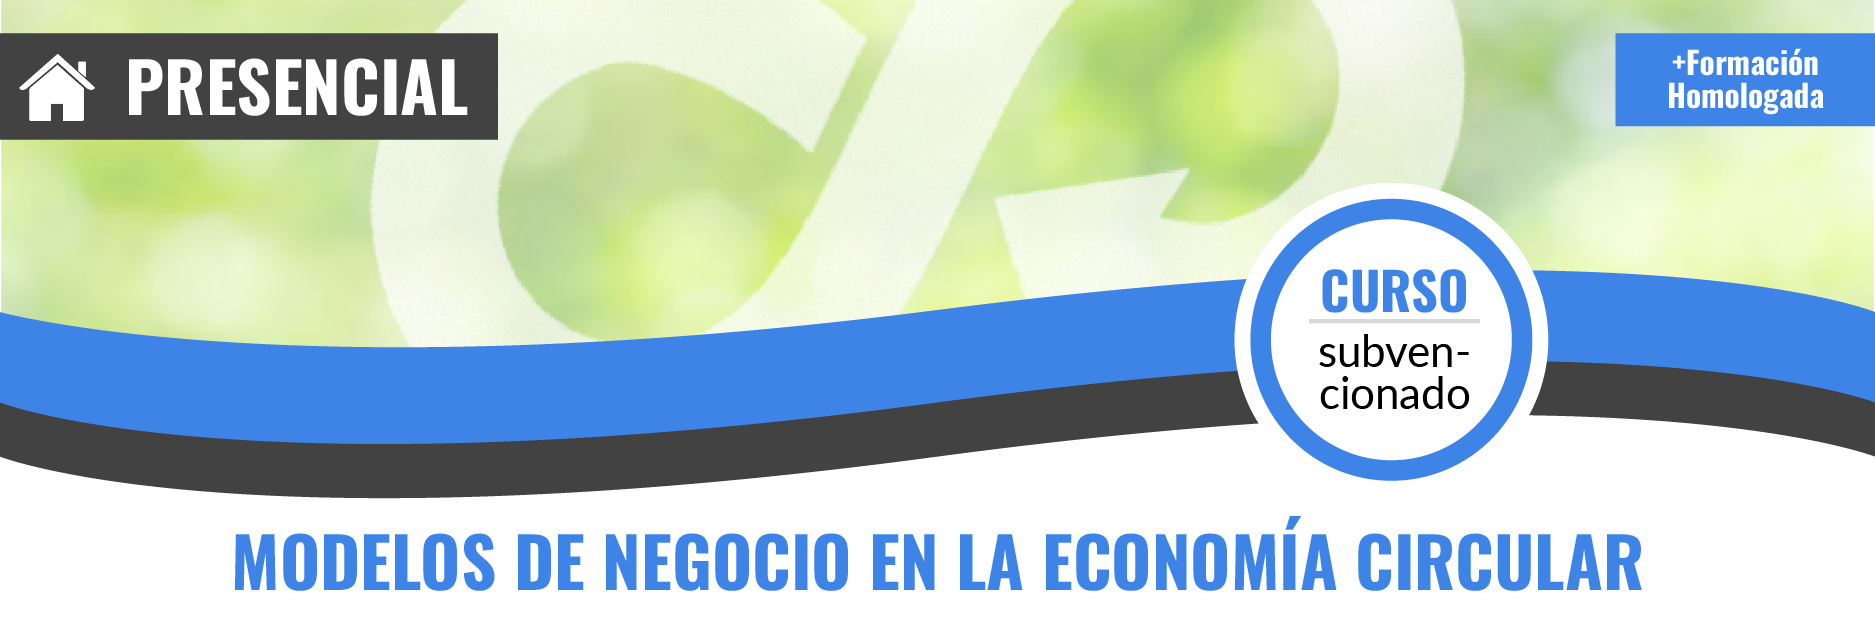 Curso gratis de SEAG02 Modelos de Negocio en la Economía Circular presencial